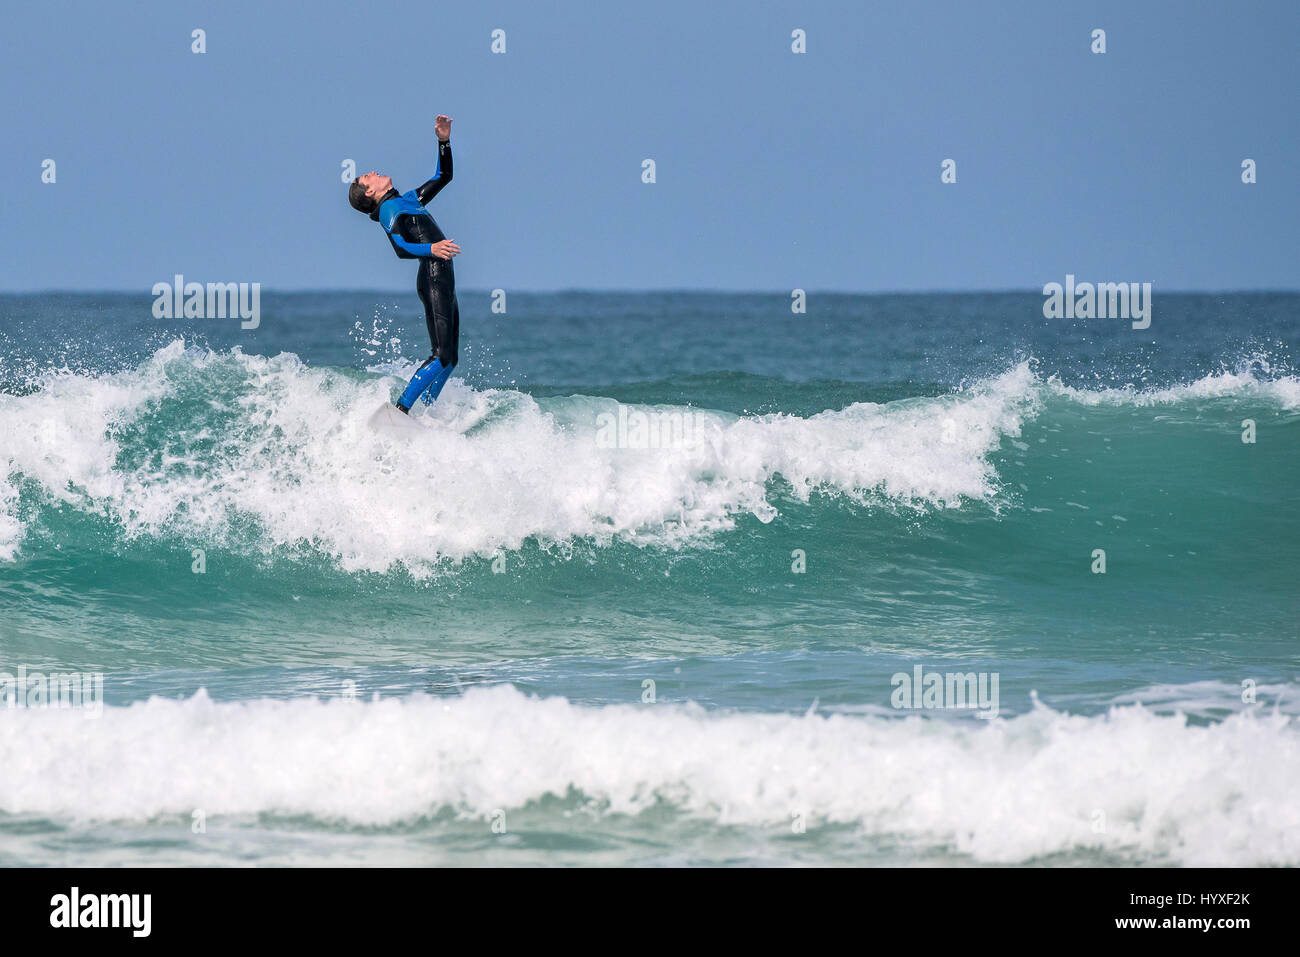 Uk surfen Surfer körperliche Aktivität Wassersport skill spektakuläre Aktion Freizeit lifestyle Freizeit Hobby Stockfoto